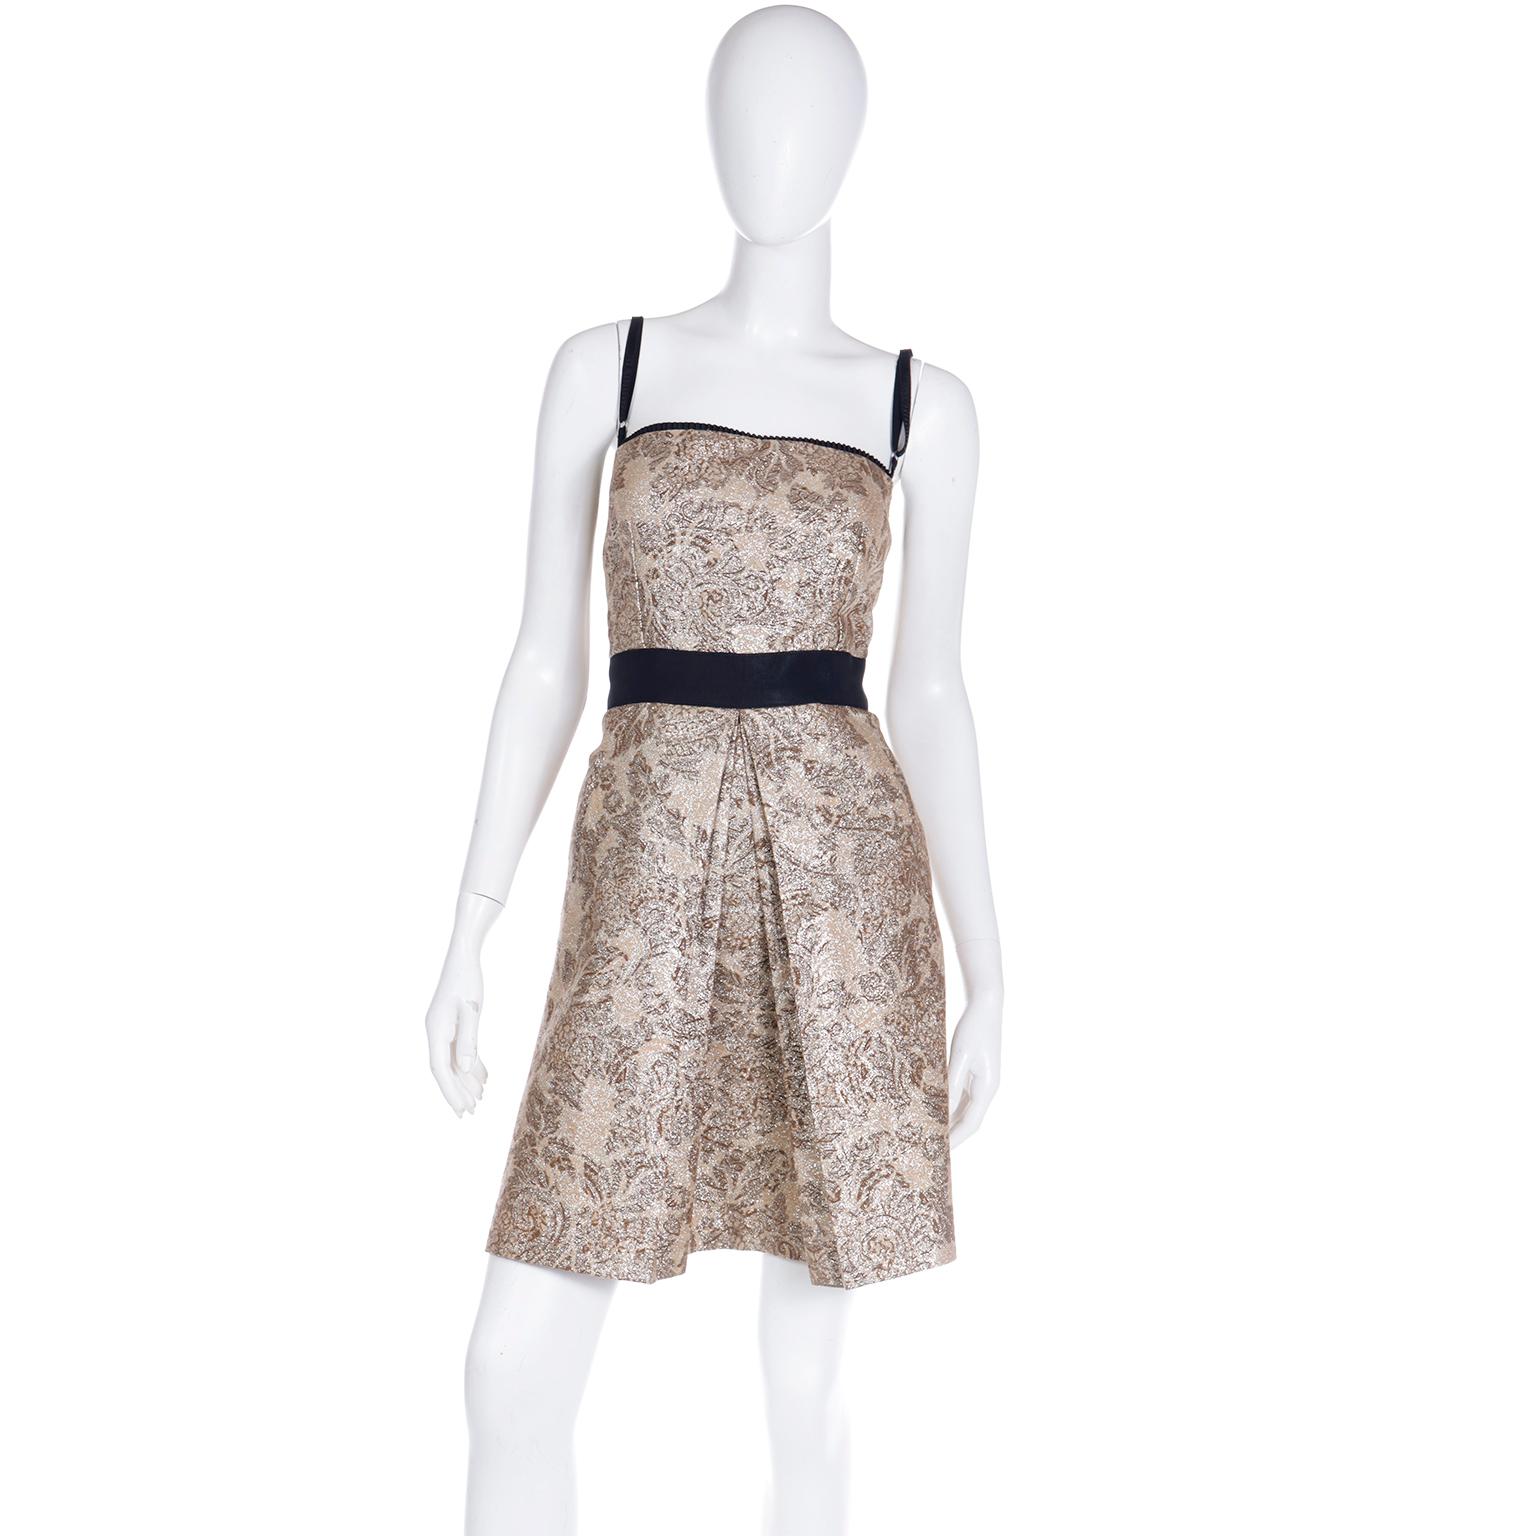 Ce bel ensemble de Dolce & Gabbana comprend une mini robe, un manteau et une ceinture à l'imprimé floral métallique doré. L'imprimé est dans des tons subtils de brun et d'or et la robe est ornée de bordures noires.  Il est rare de trouver cette